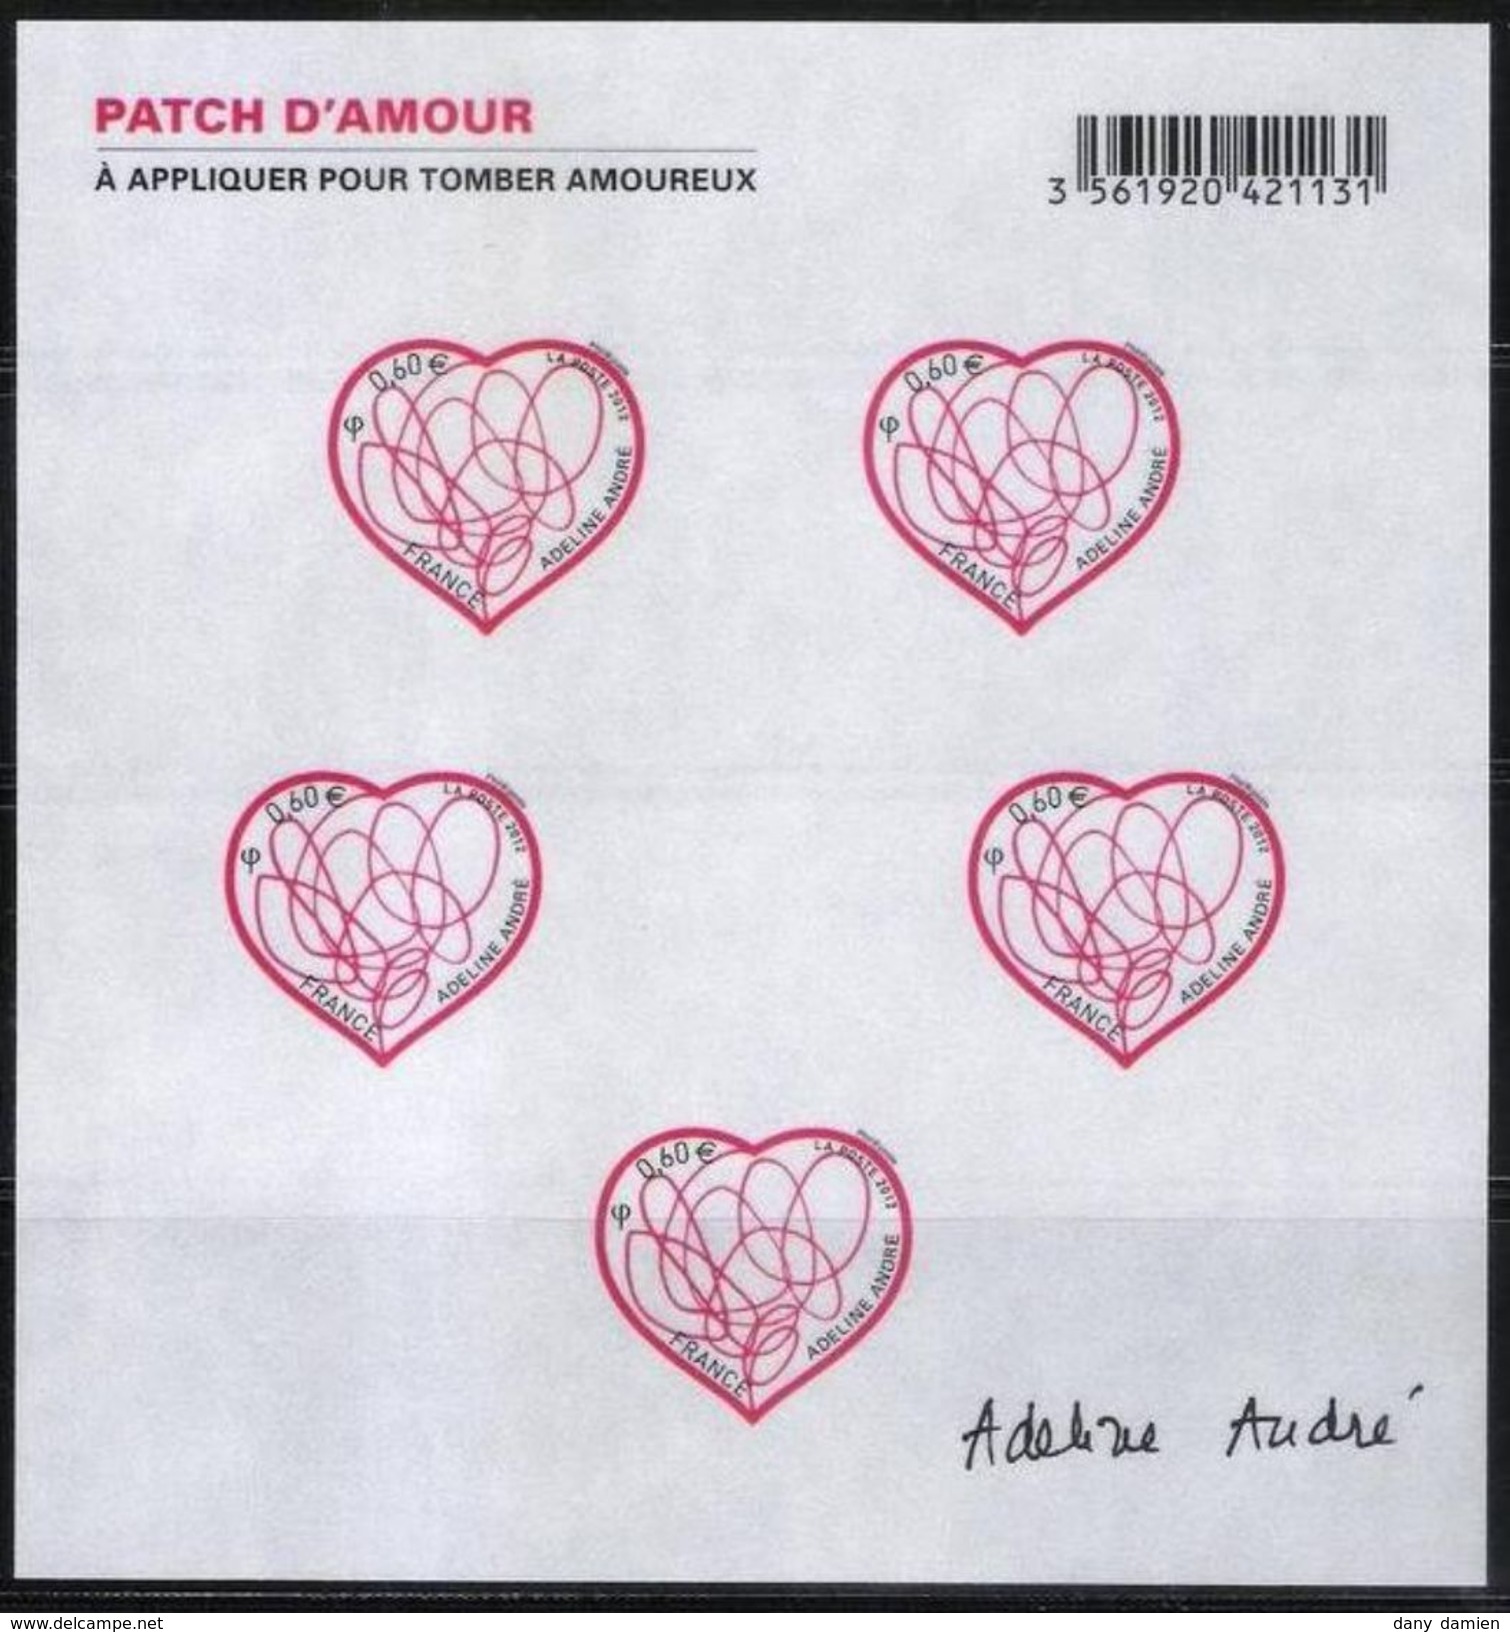 France - Bloc Feuillet Autoadhésifs Y&T N° F648 Patch D'Amour D'Adeline ANDRE 0.60€ (2012) - Unused Stamps